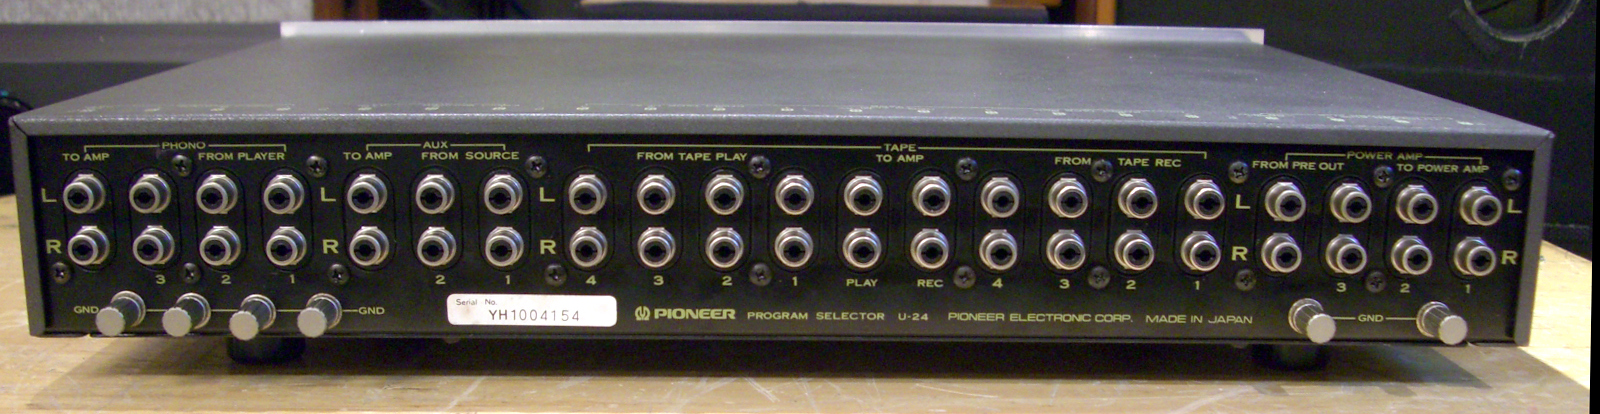 Pioneer U 24-2.jpg